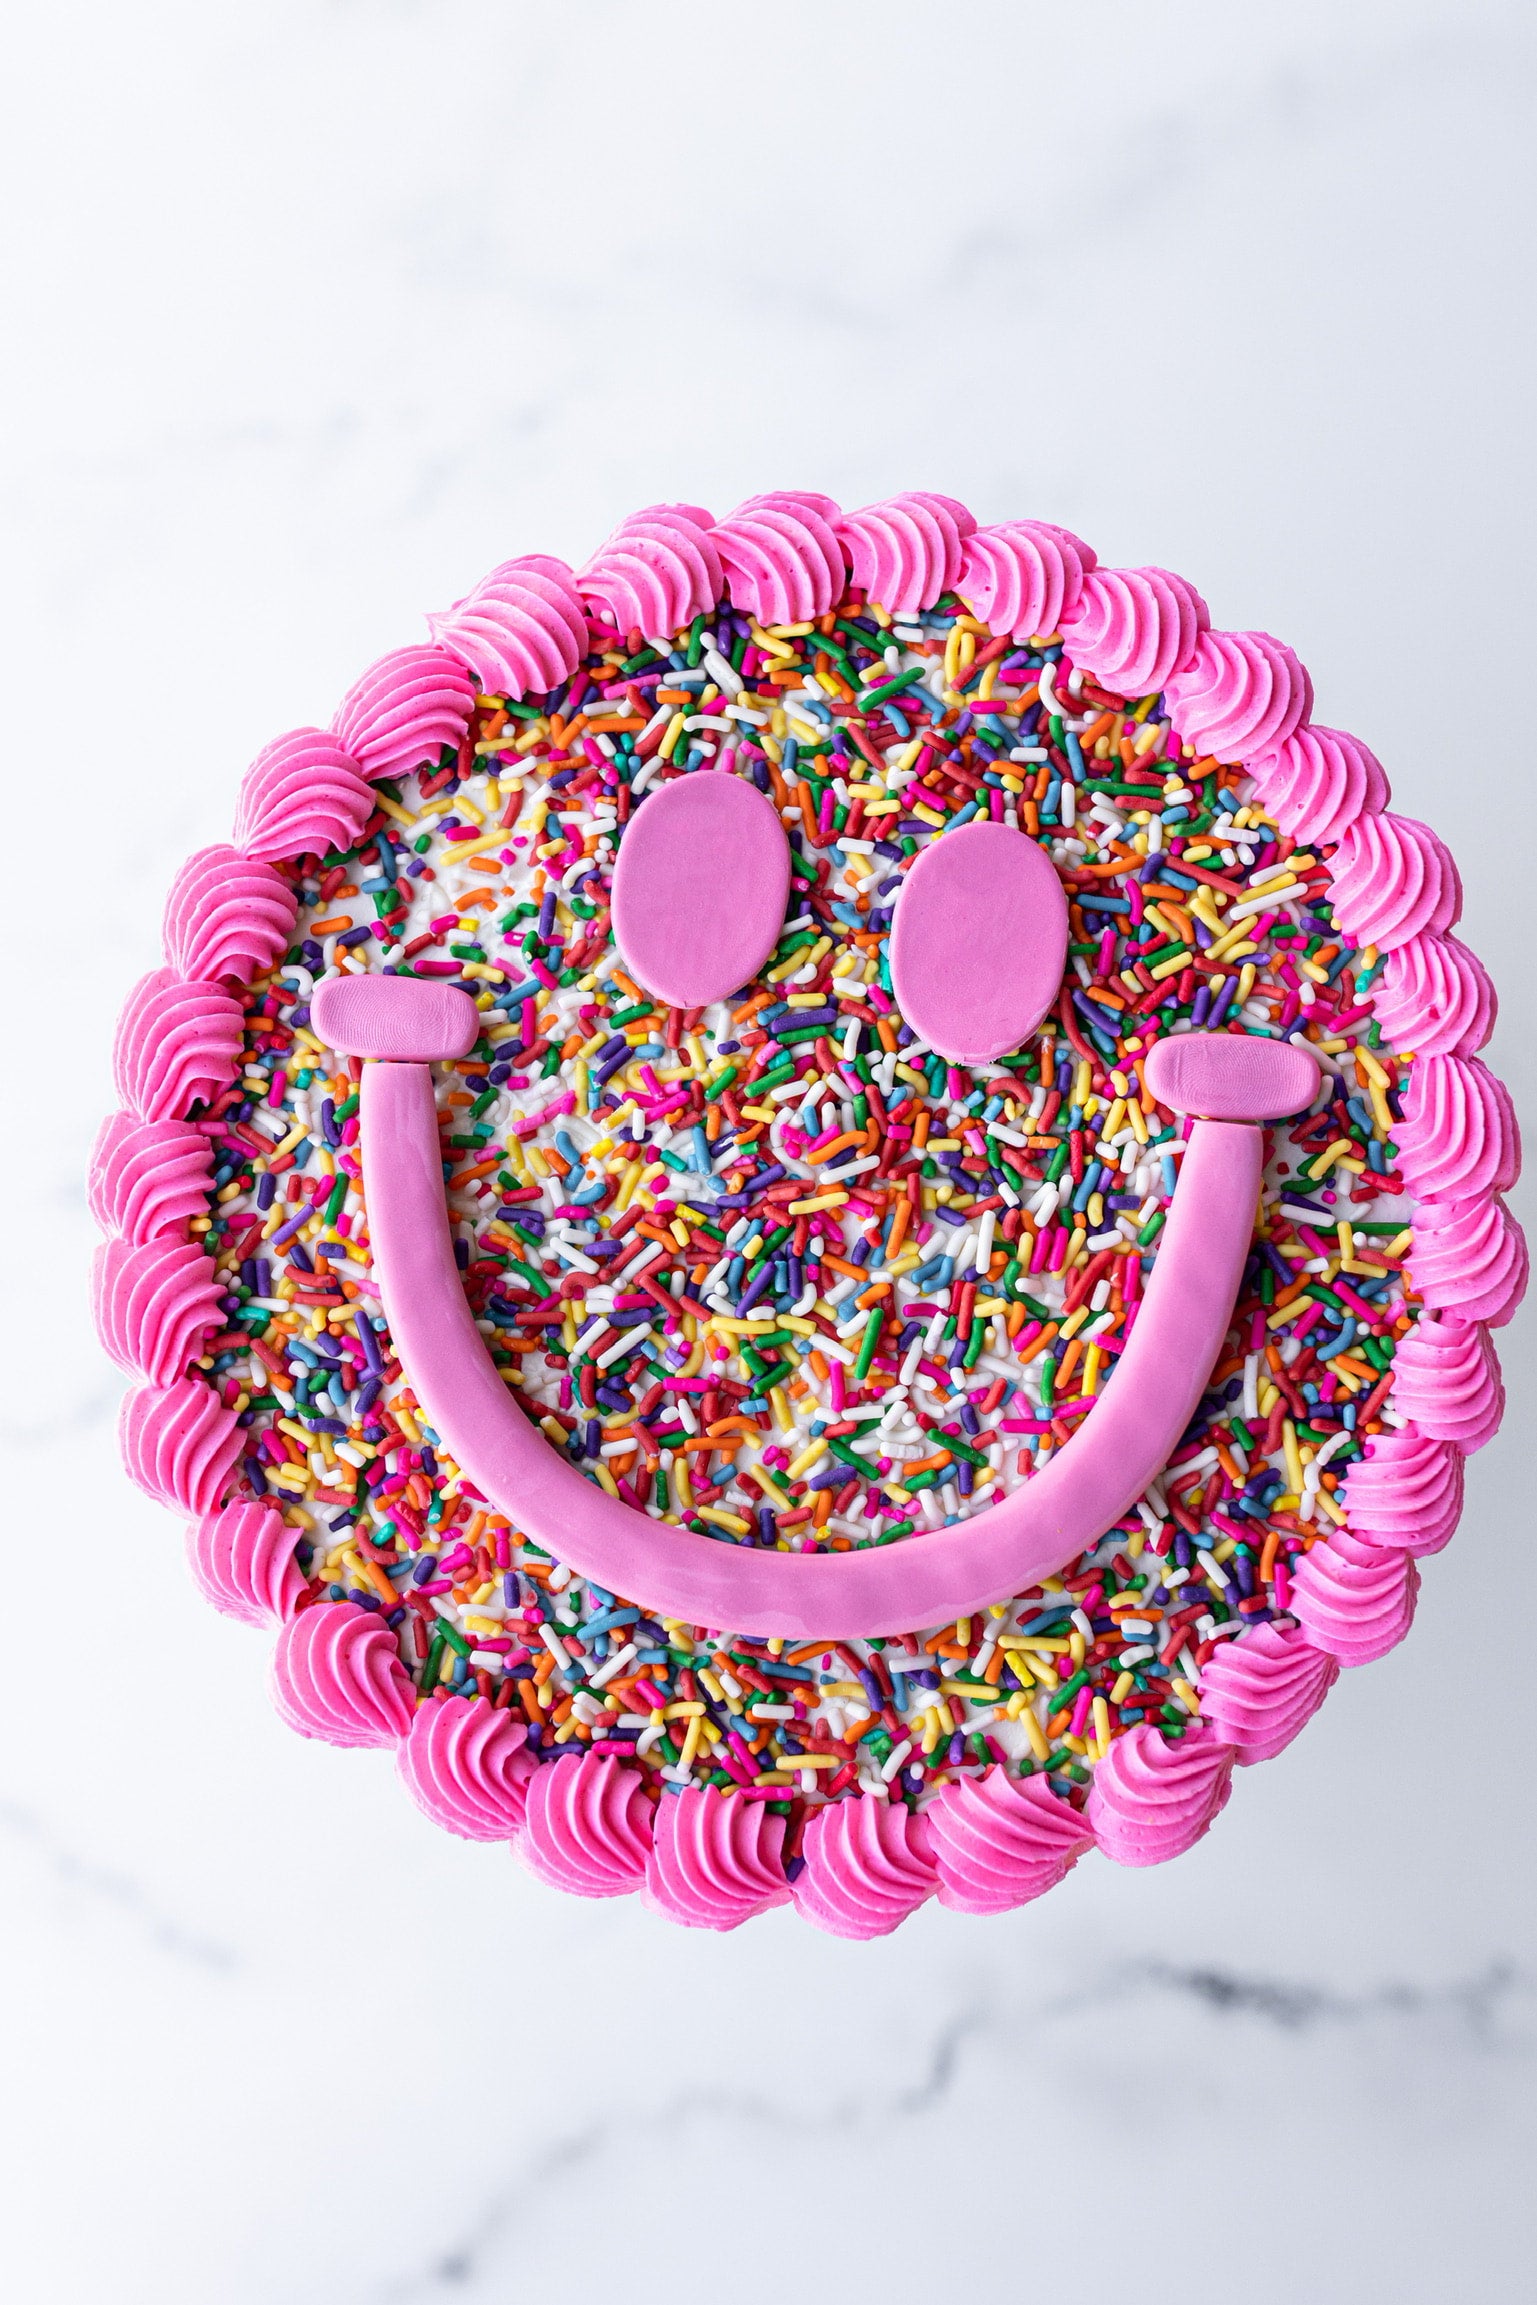 www.cake.lk | Smiley Face Cake 1.5kg